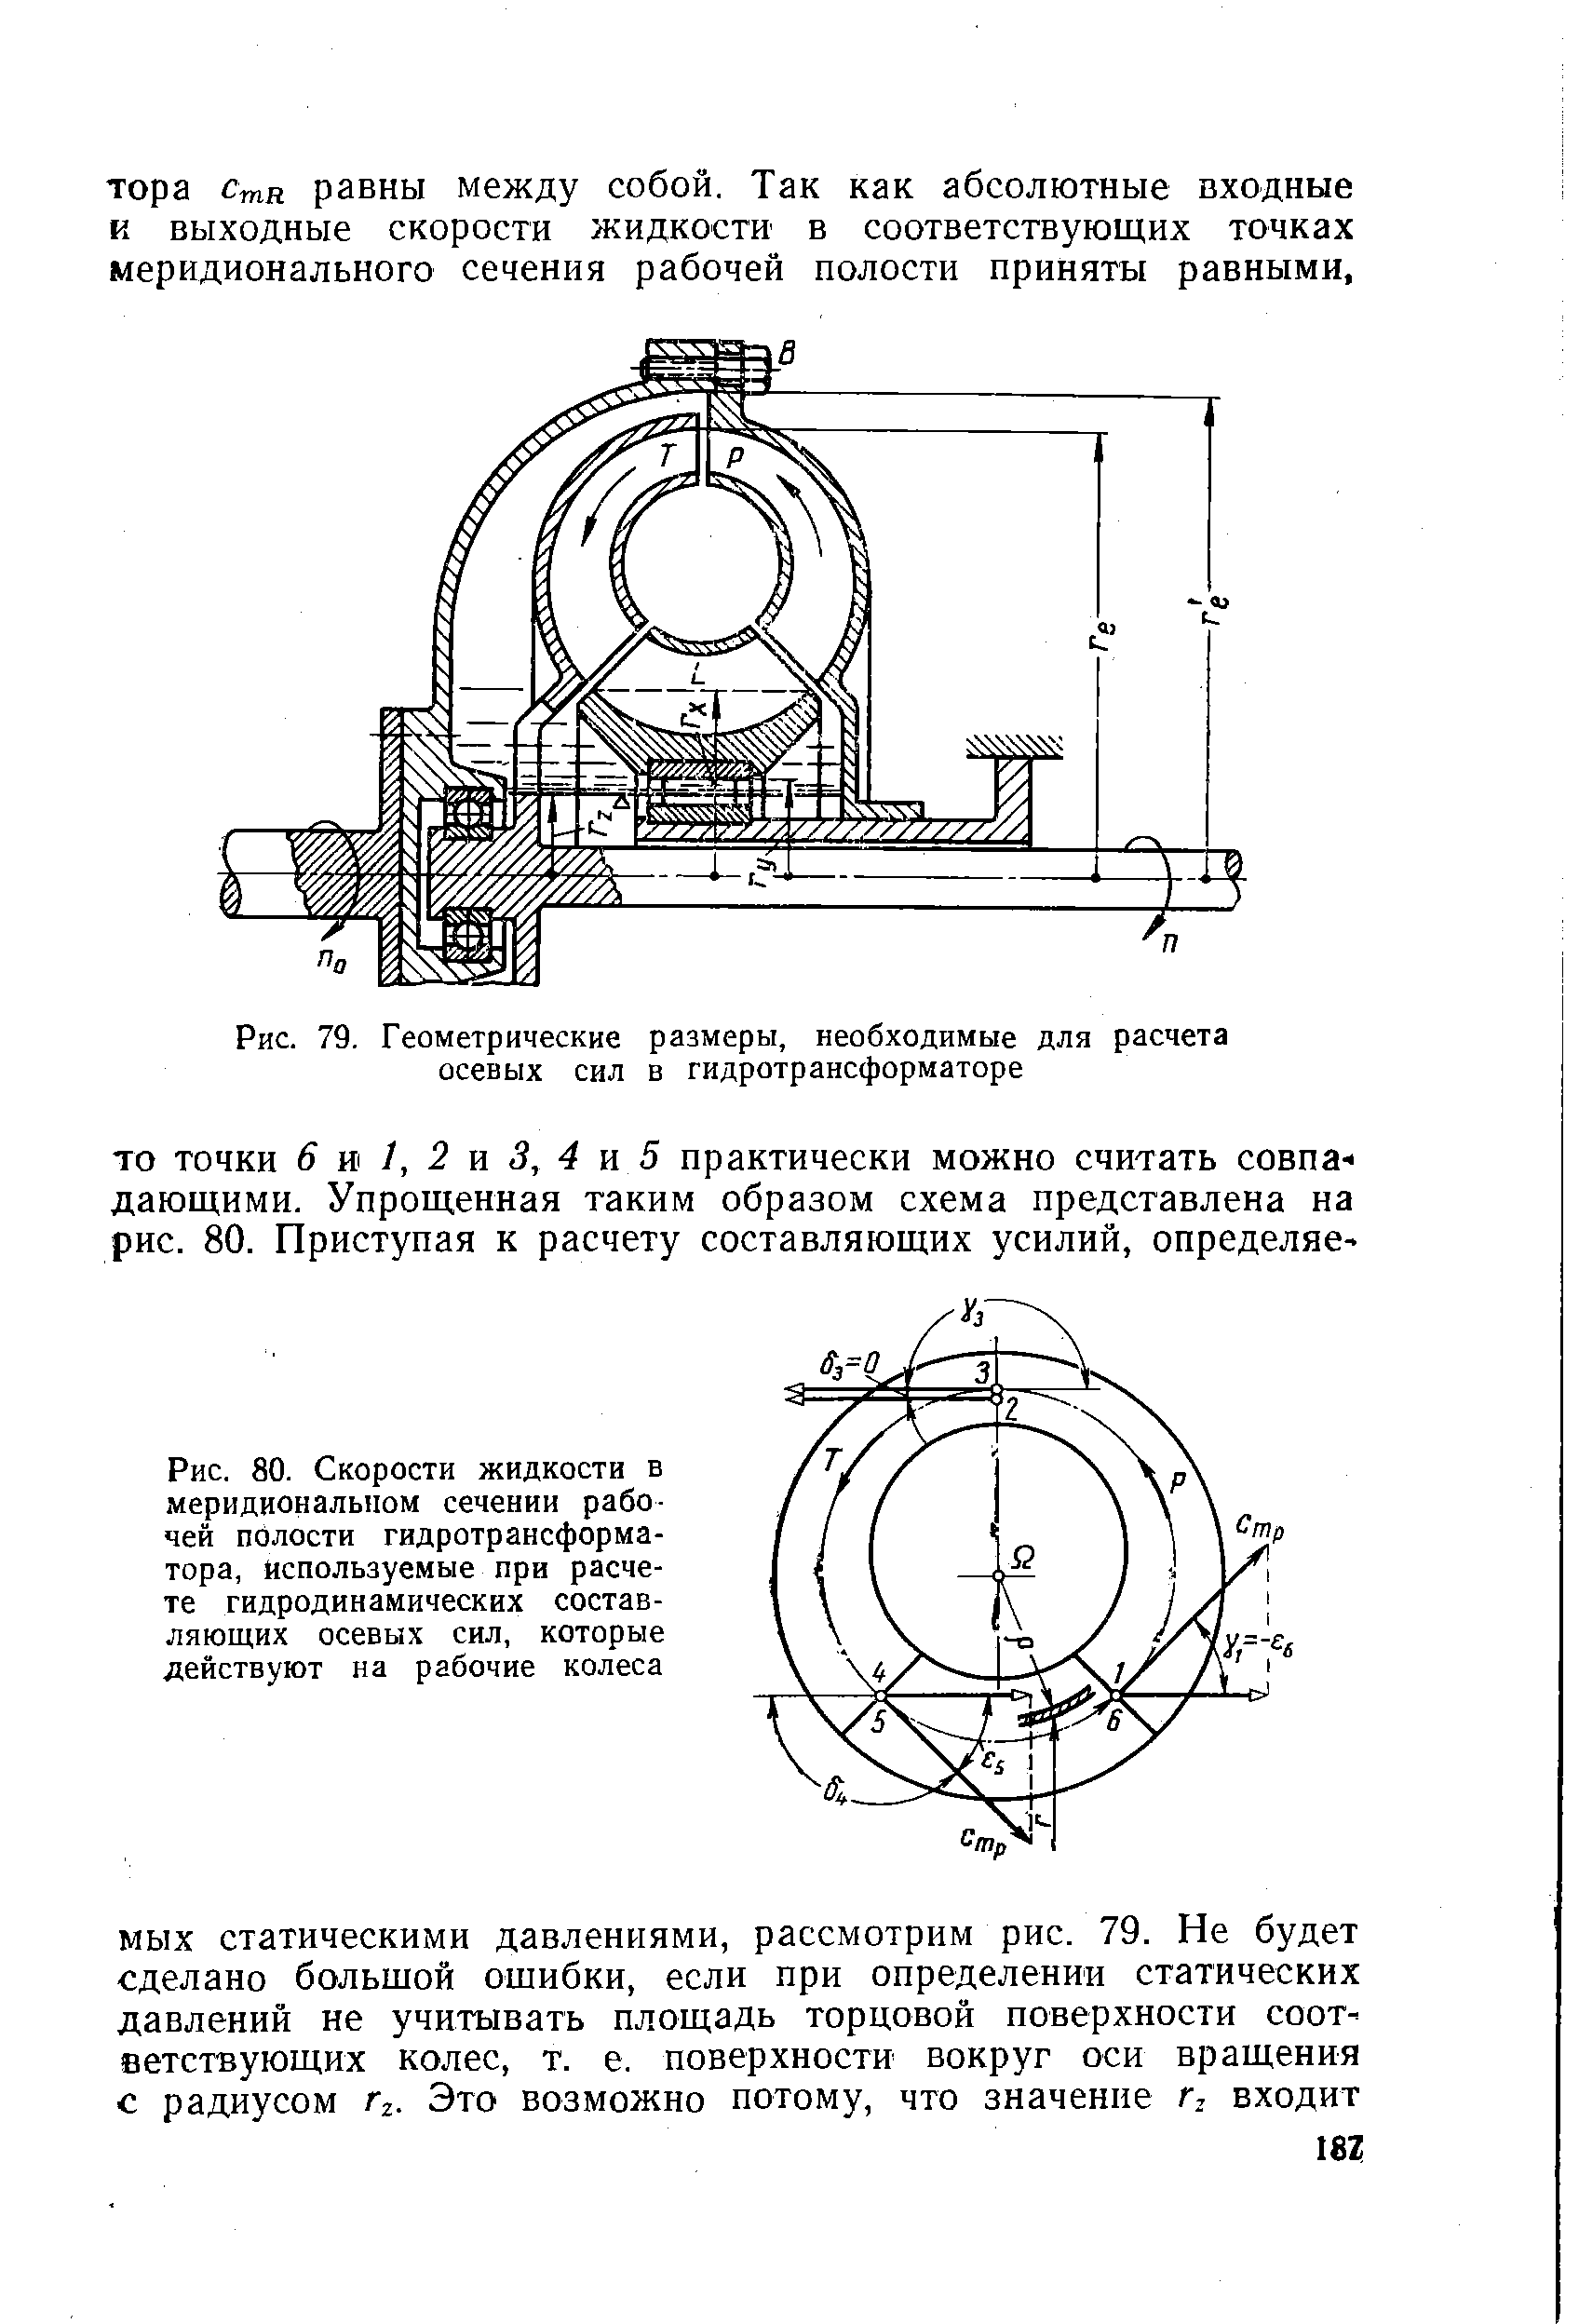 Рис. 79. Геометрические размеры, необходимые для расчета осевых сил в гидротрансформаторе
